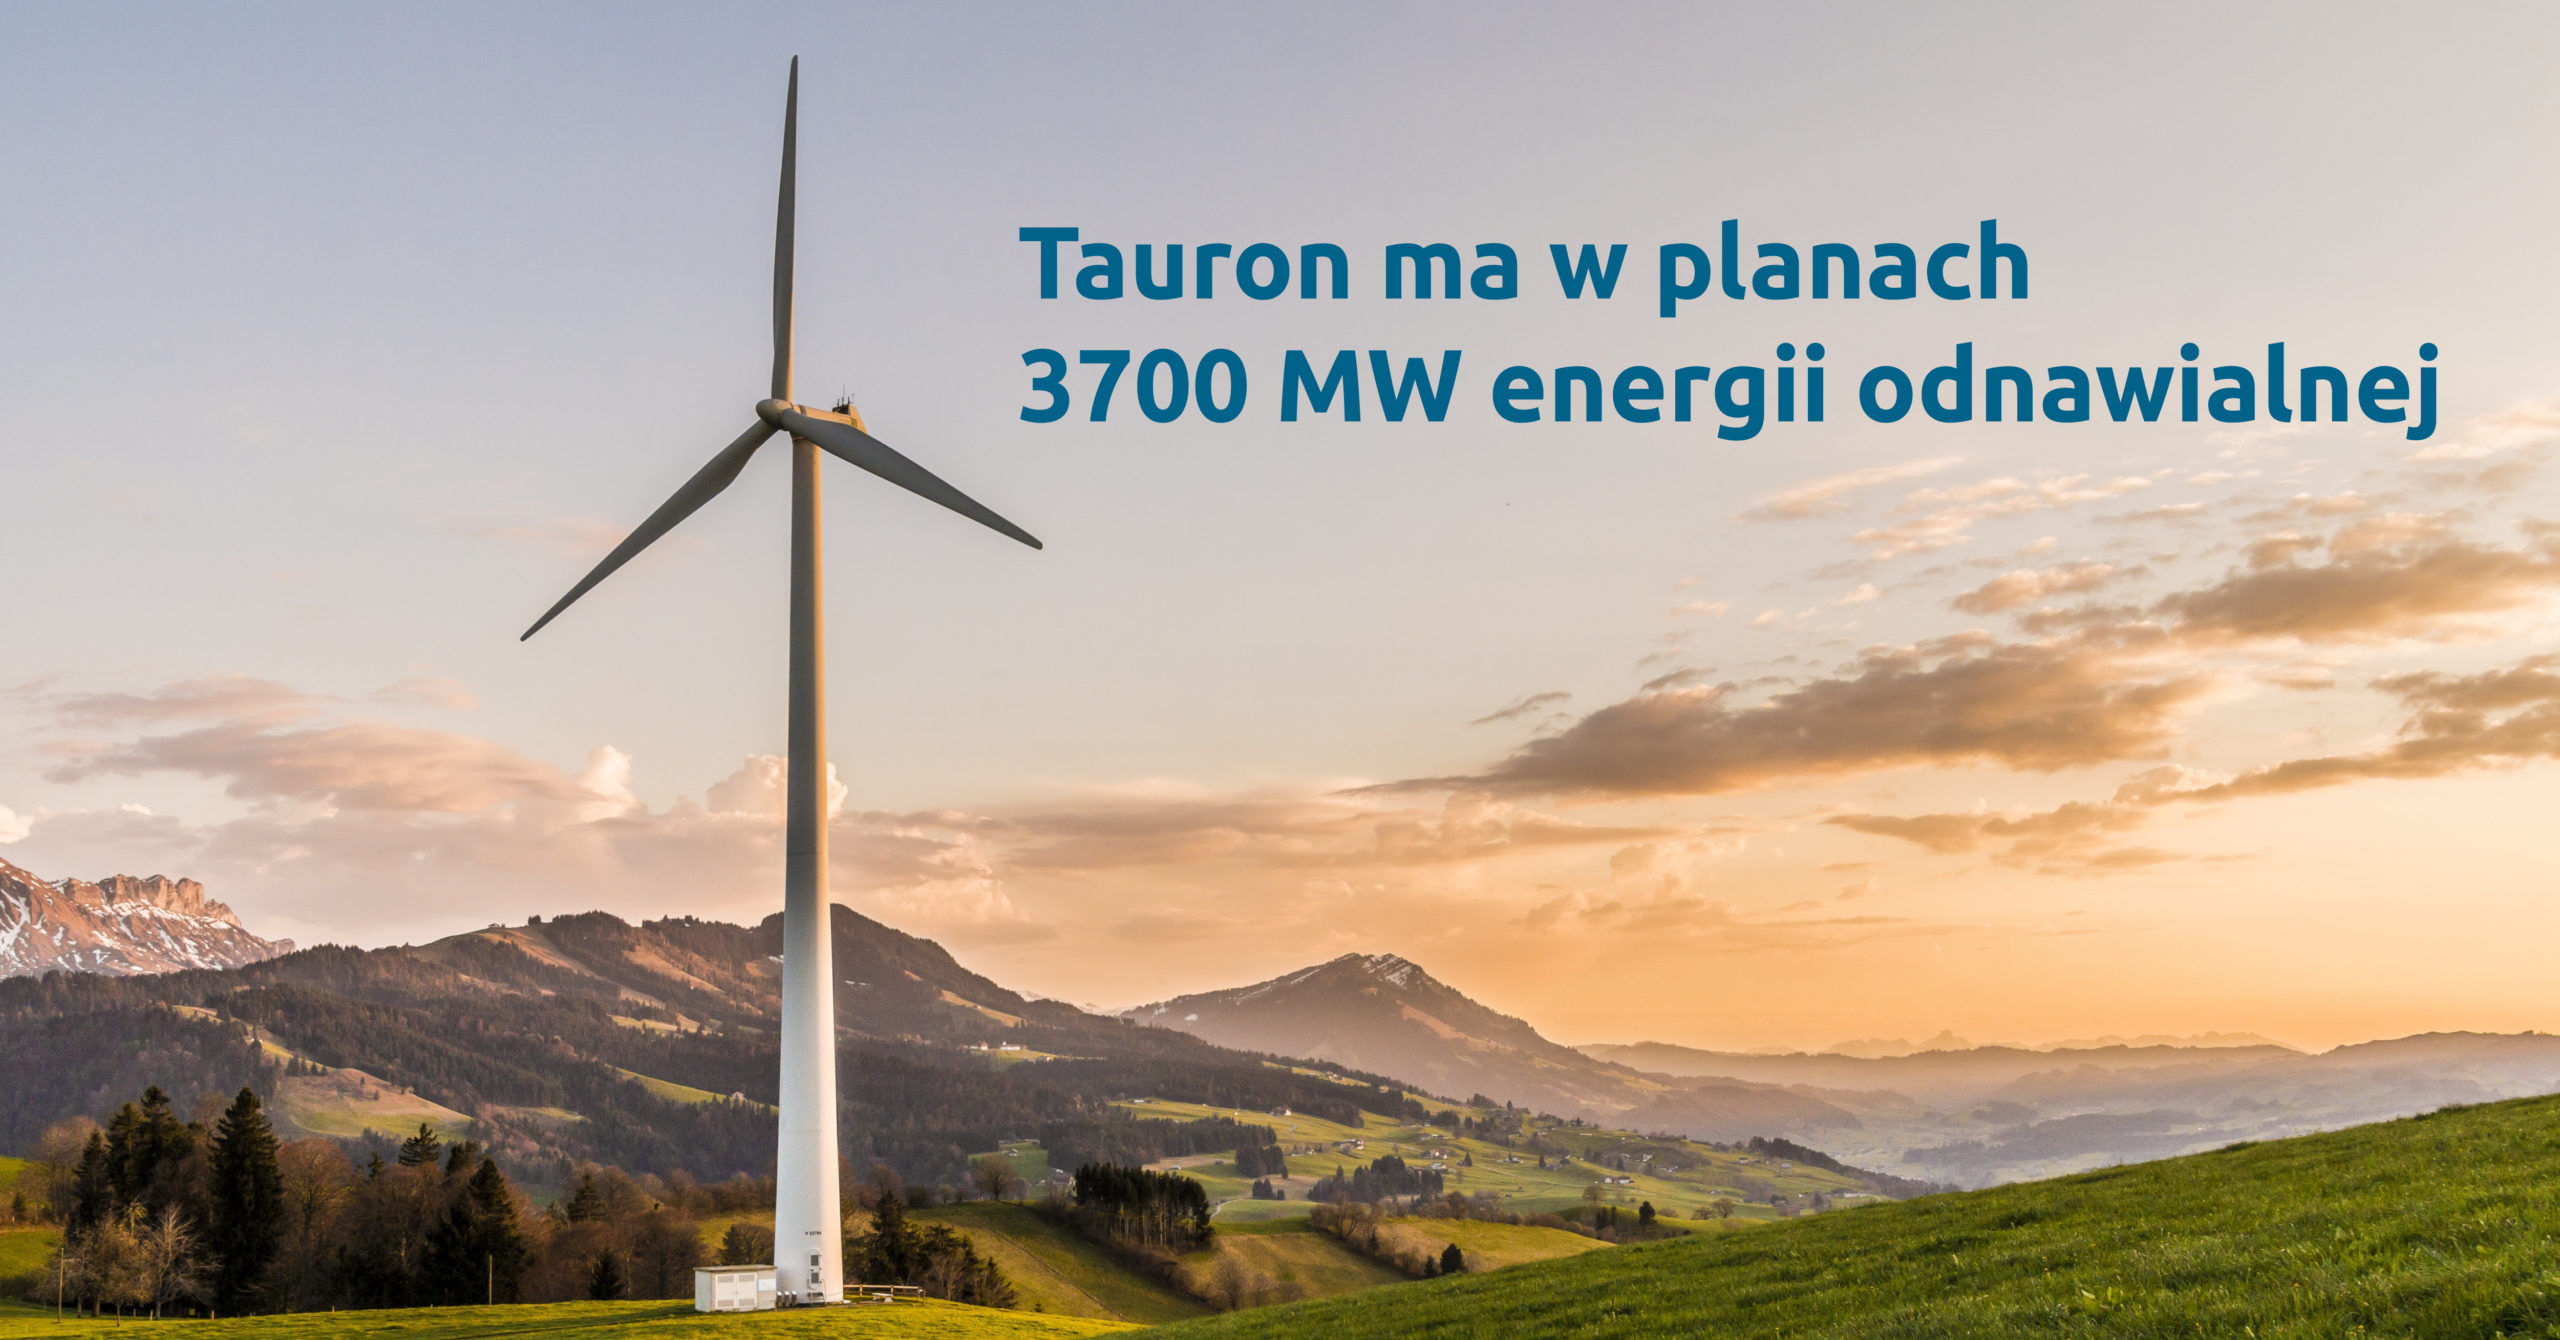 Tauron ma w planach 3700 MW energii odnawialnej